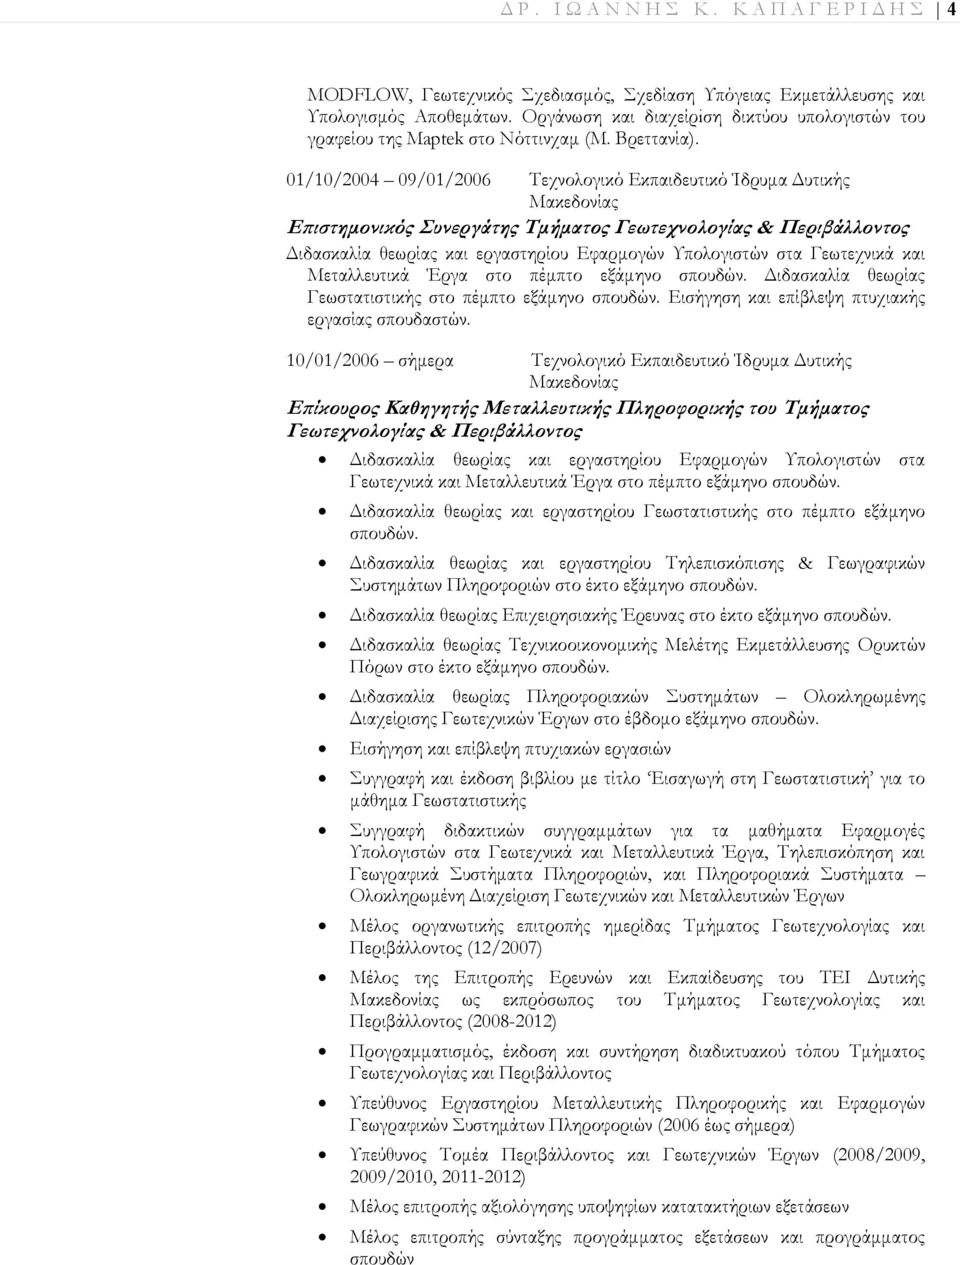 01/10/2004 09/01/2006 Τεχνολογικό Εκπαιδευτικό Ίδρυμα Δυτικής Μακεδονίας Επιστημονικός Συνεργάτης Τμήματος Γεωτεχνολογίας & Περιβάλλοντος Διδασκαλία θεωρίας και εργαστηρίου Εφαρμογών Υπολογιστών στα